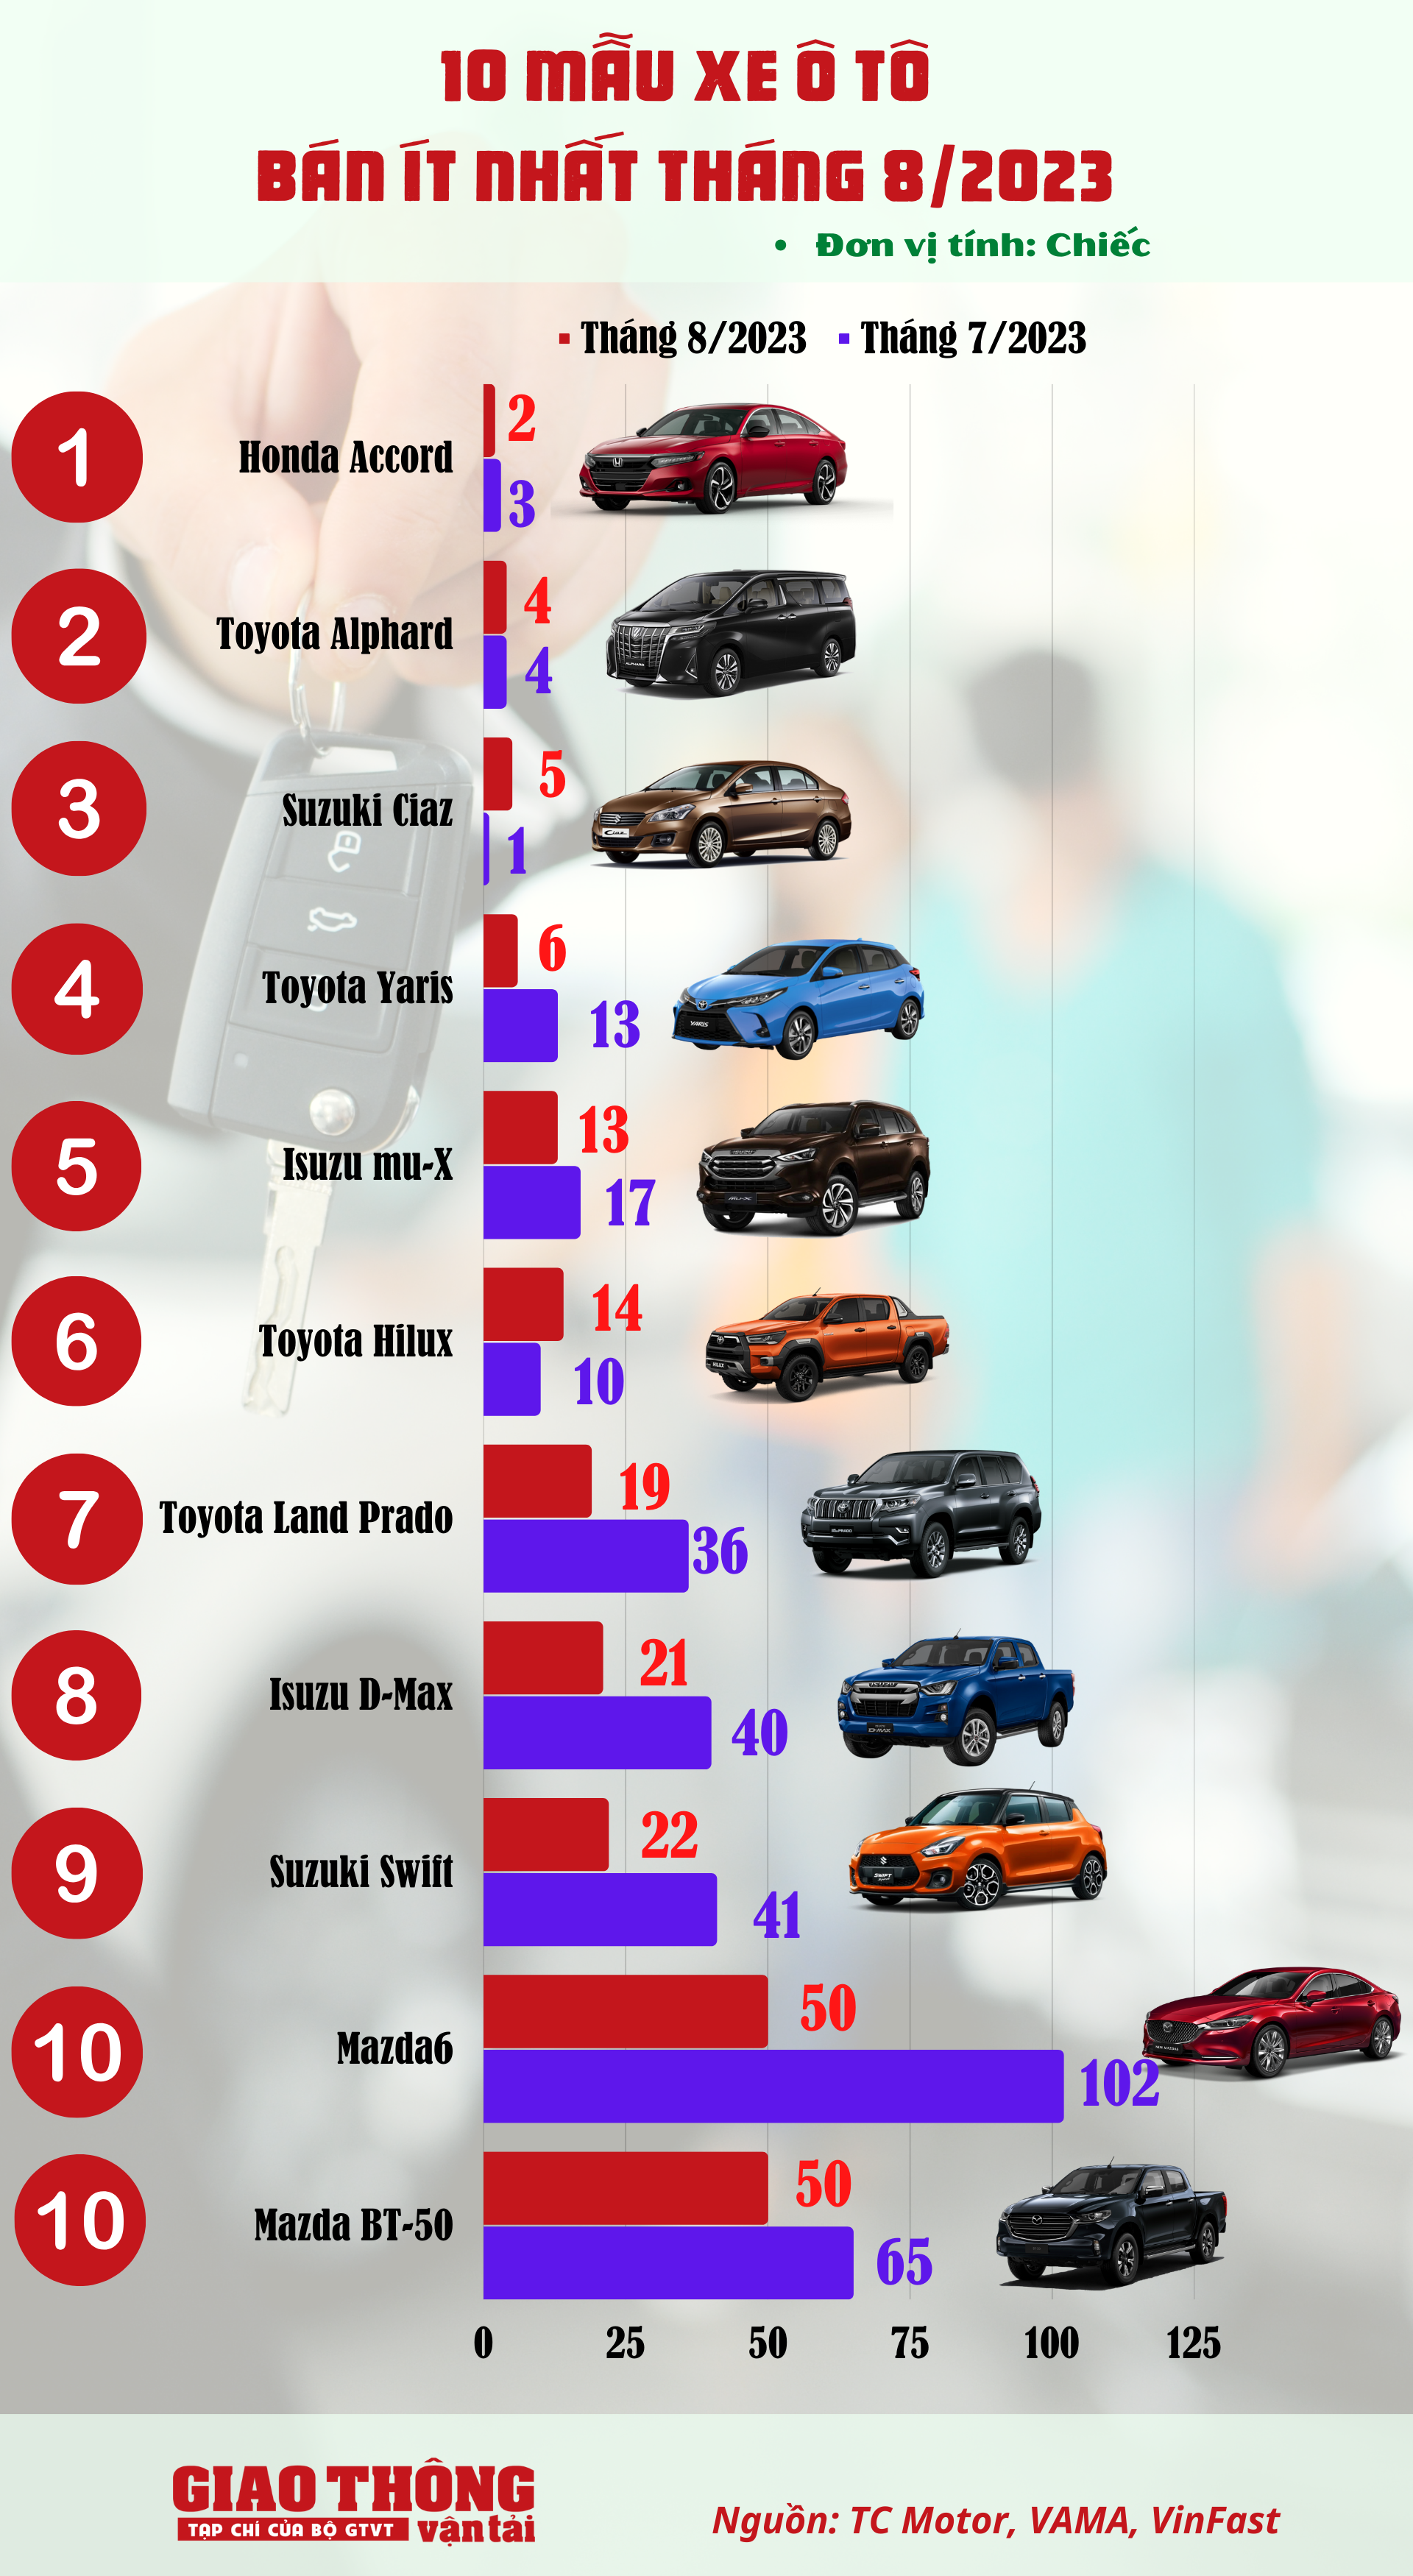 10 ô tô bán ít nhất tháng 8/2023: Bất ngờ bộ đôi xe Mazda - Ảnh 1.